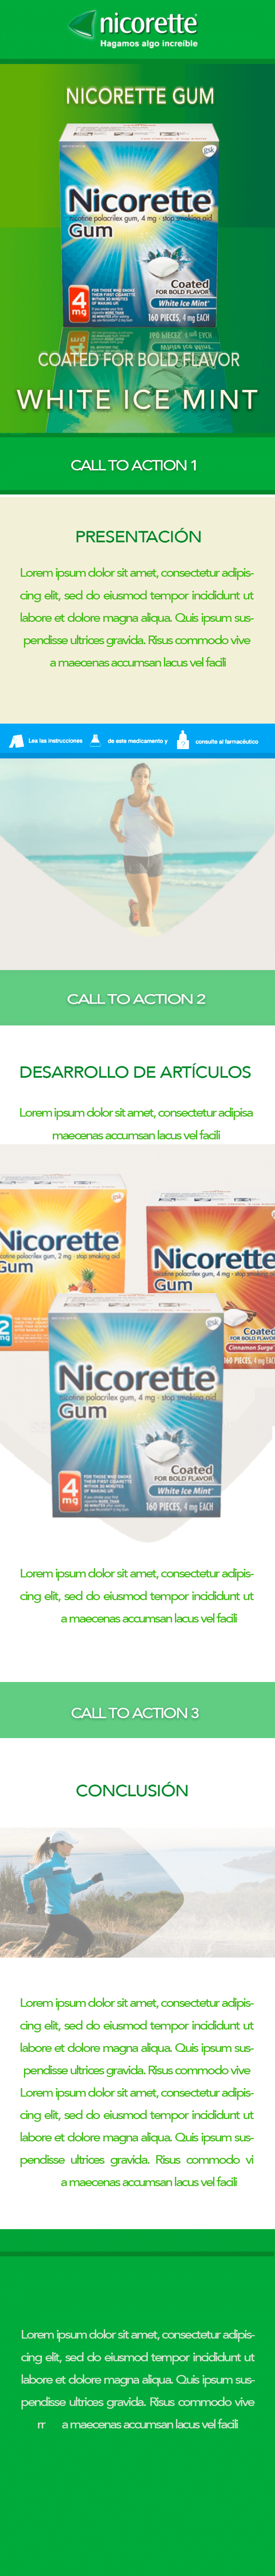 Propuestas Newsletter Nicorette Gum 5